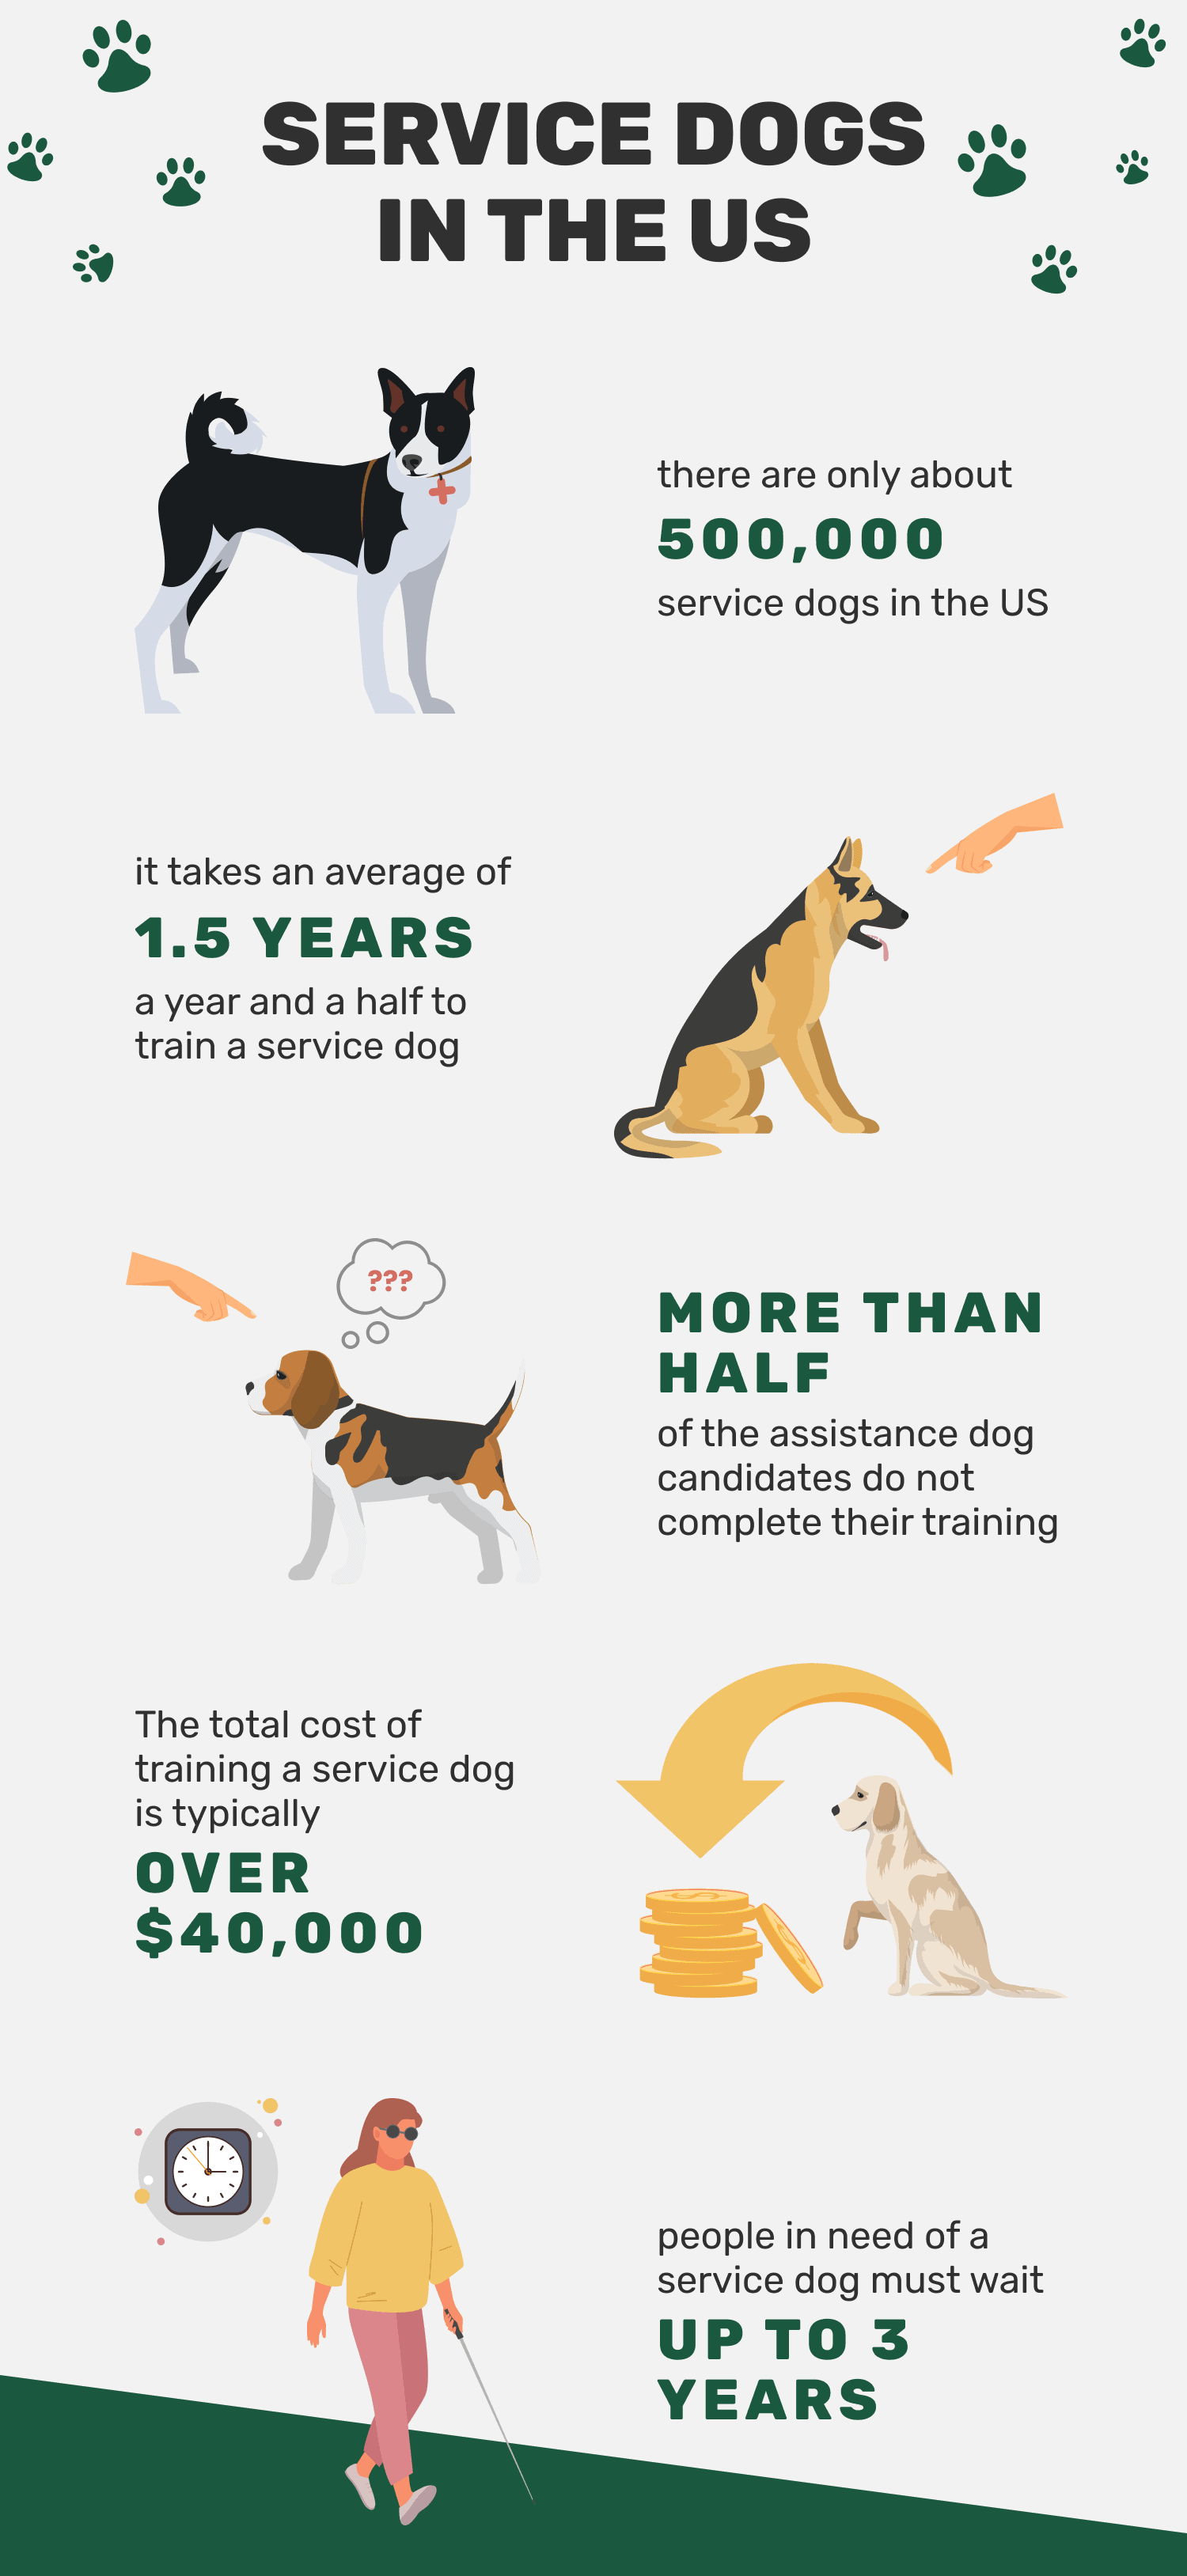 10 pozoruhodných služebních psů (statistiky, které je třeba znát v roce 2022)